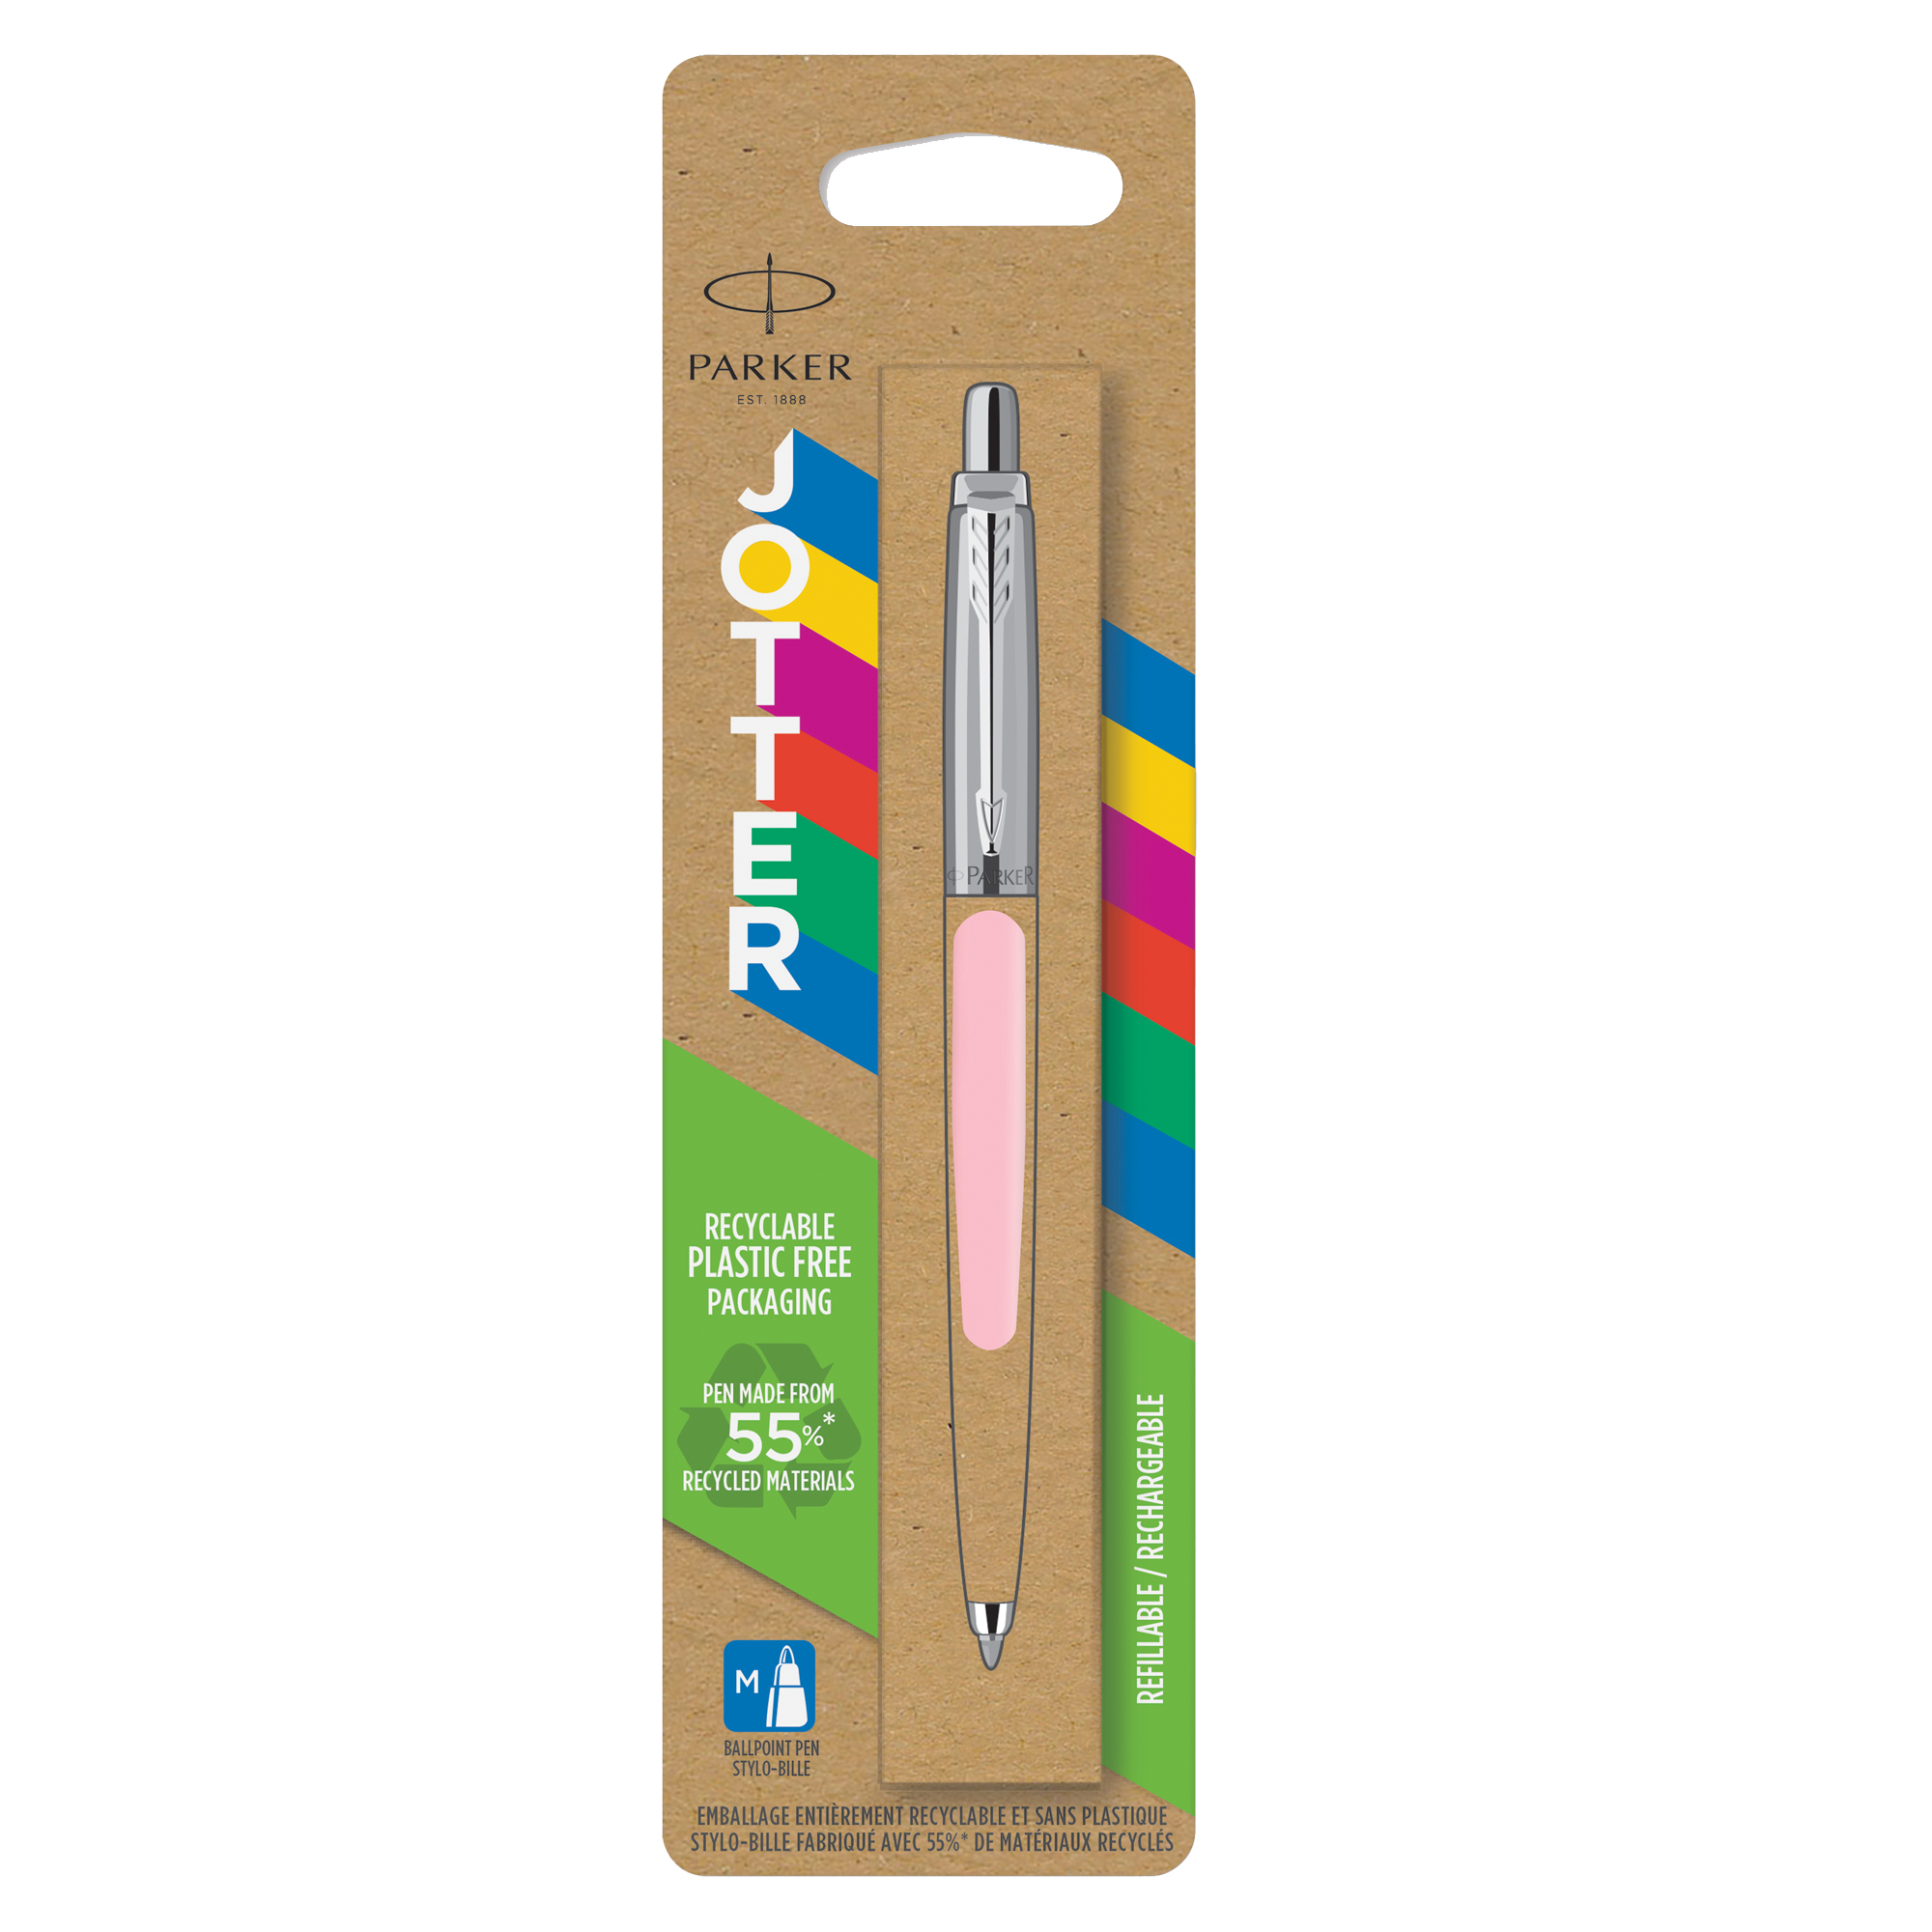 Penna sfera Jotter Original - punta M - fusto rosa - Parker